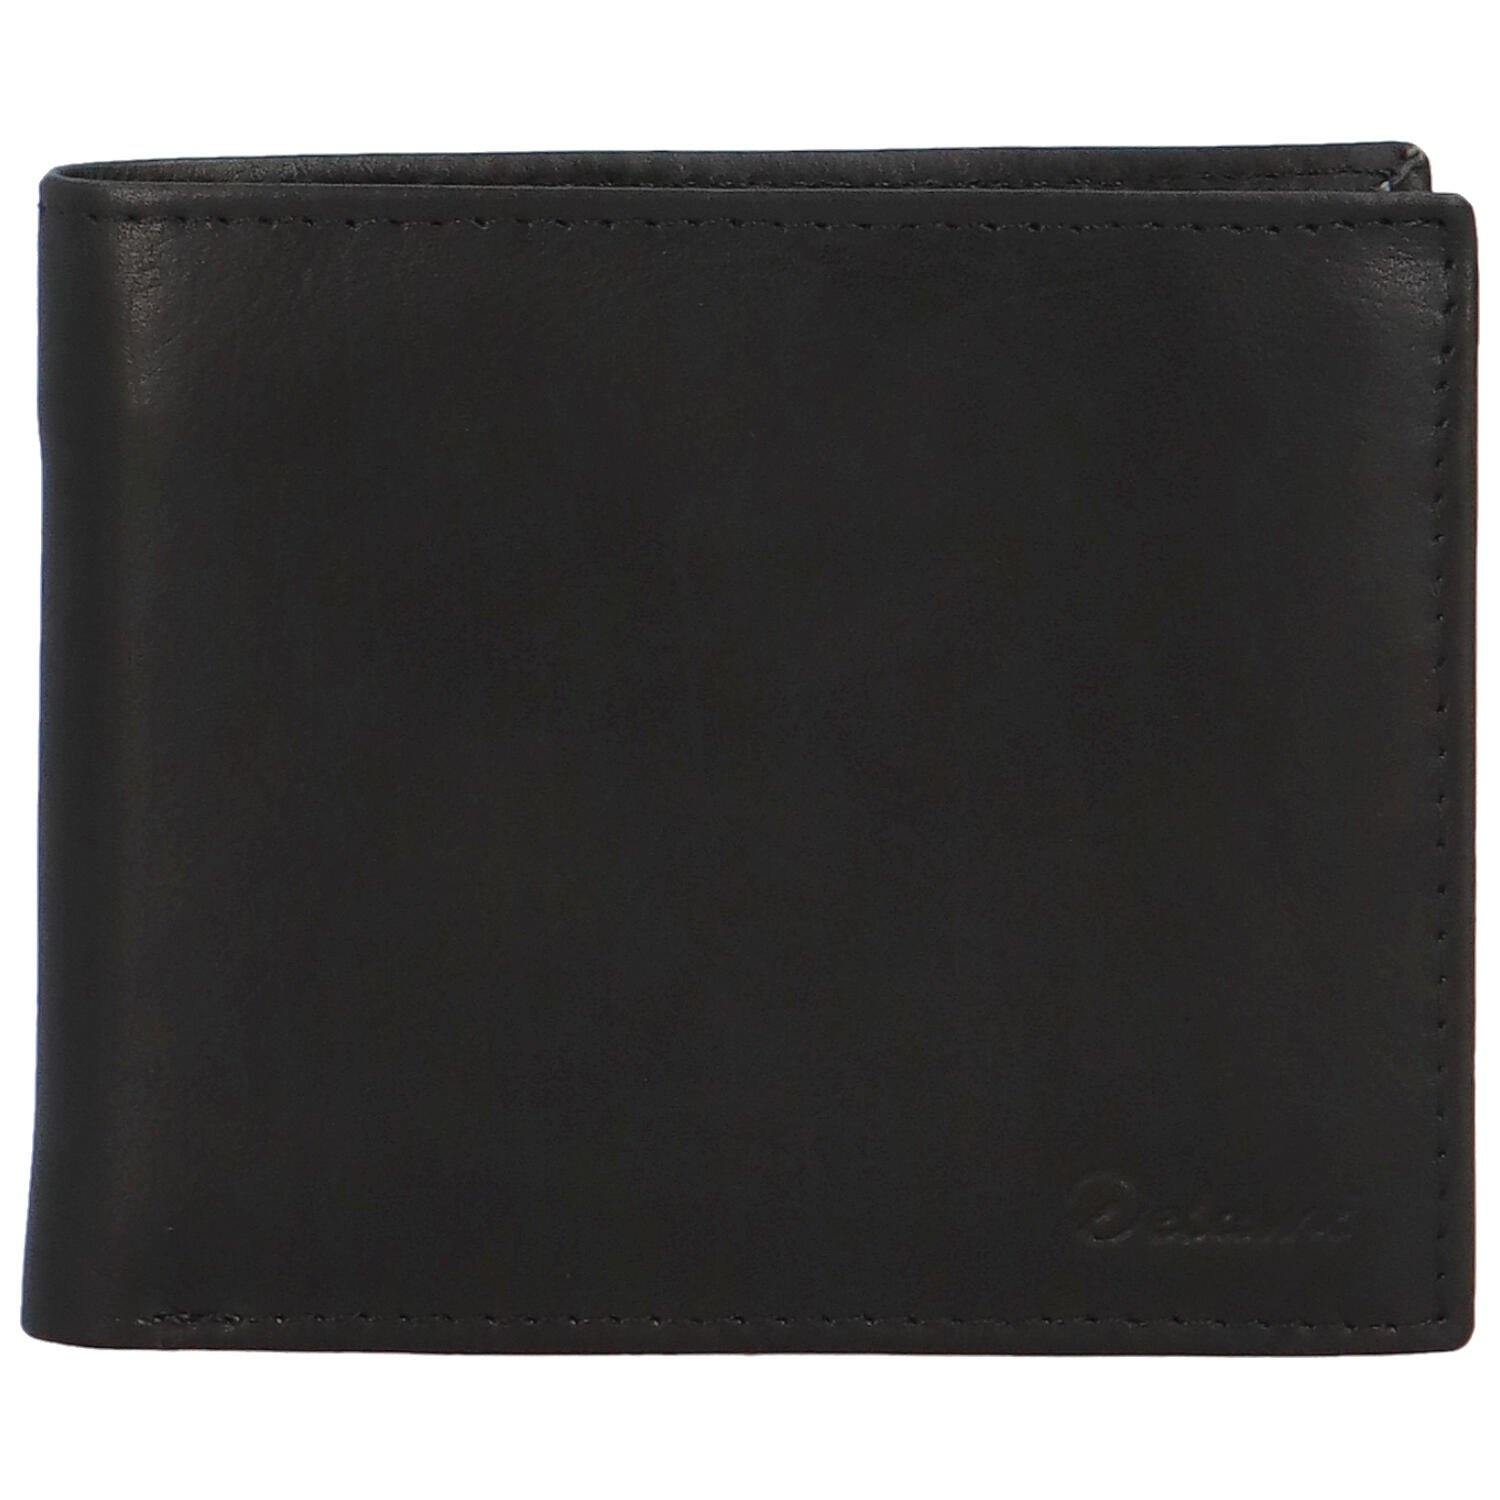 Luxusní pánská kožená peněženka Takis, černá